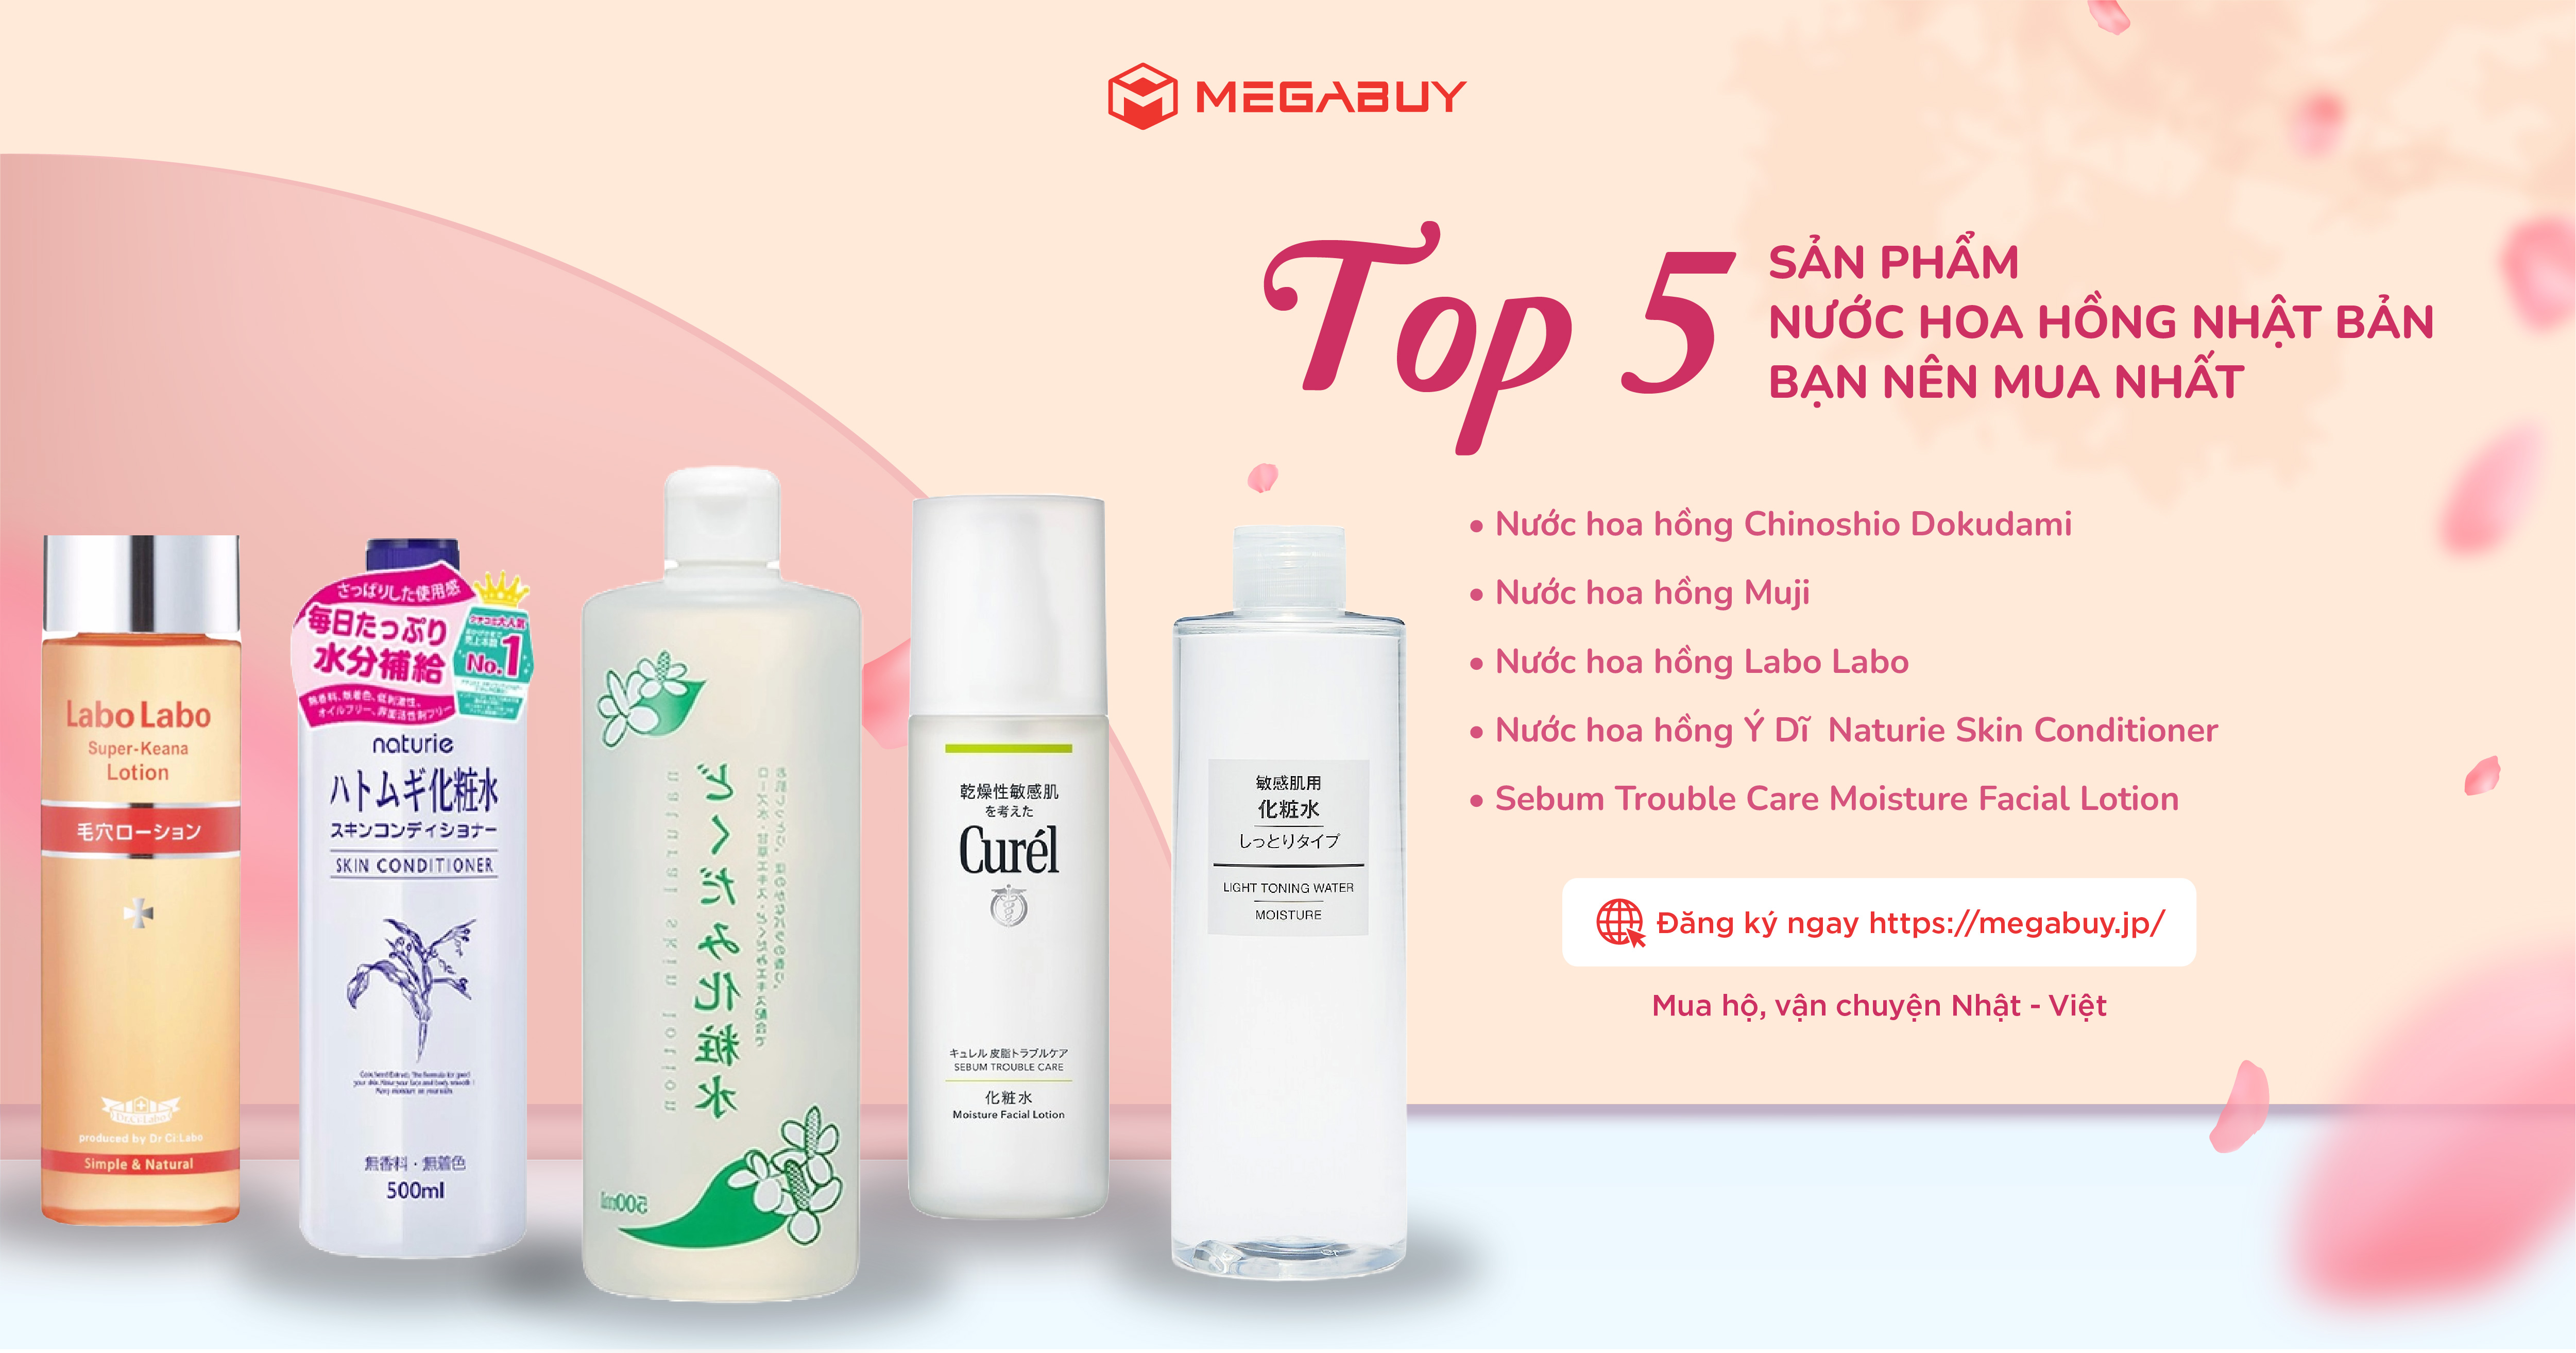 Top 5 sản phẩm nước hoa hồng Nhật Bản tốt nhất 